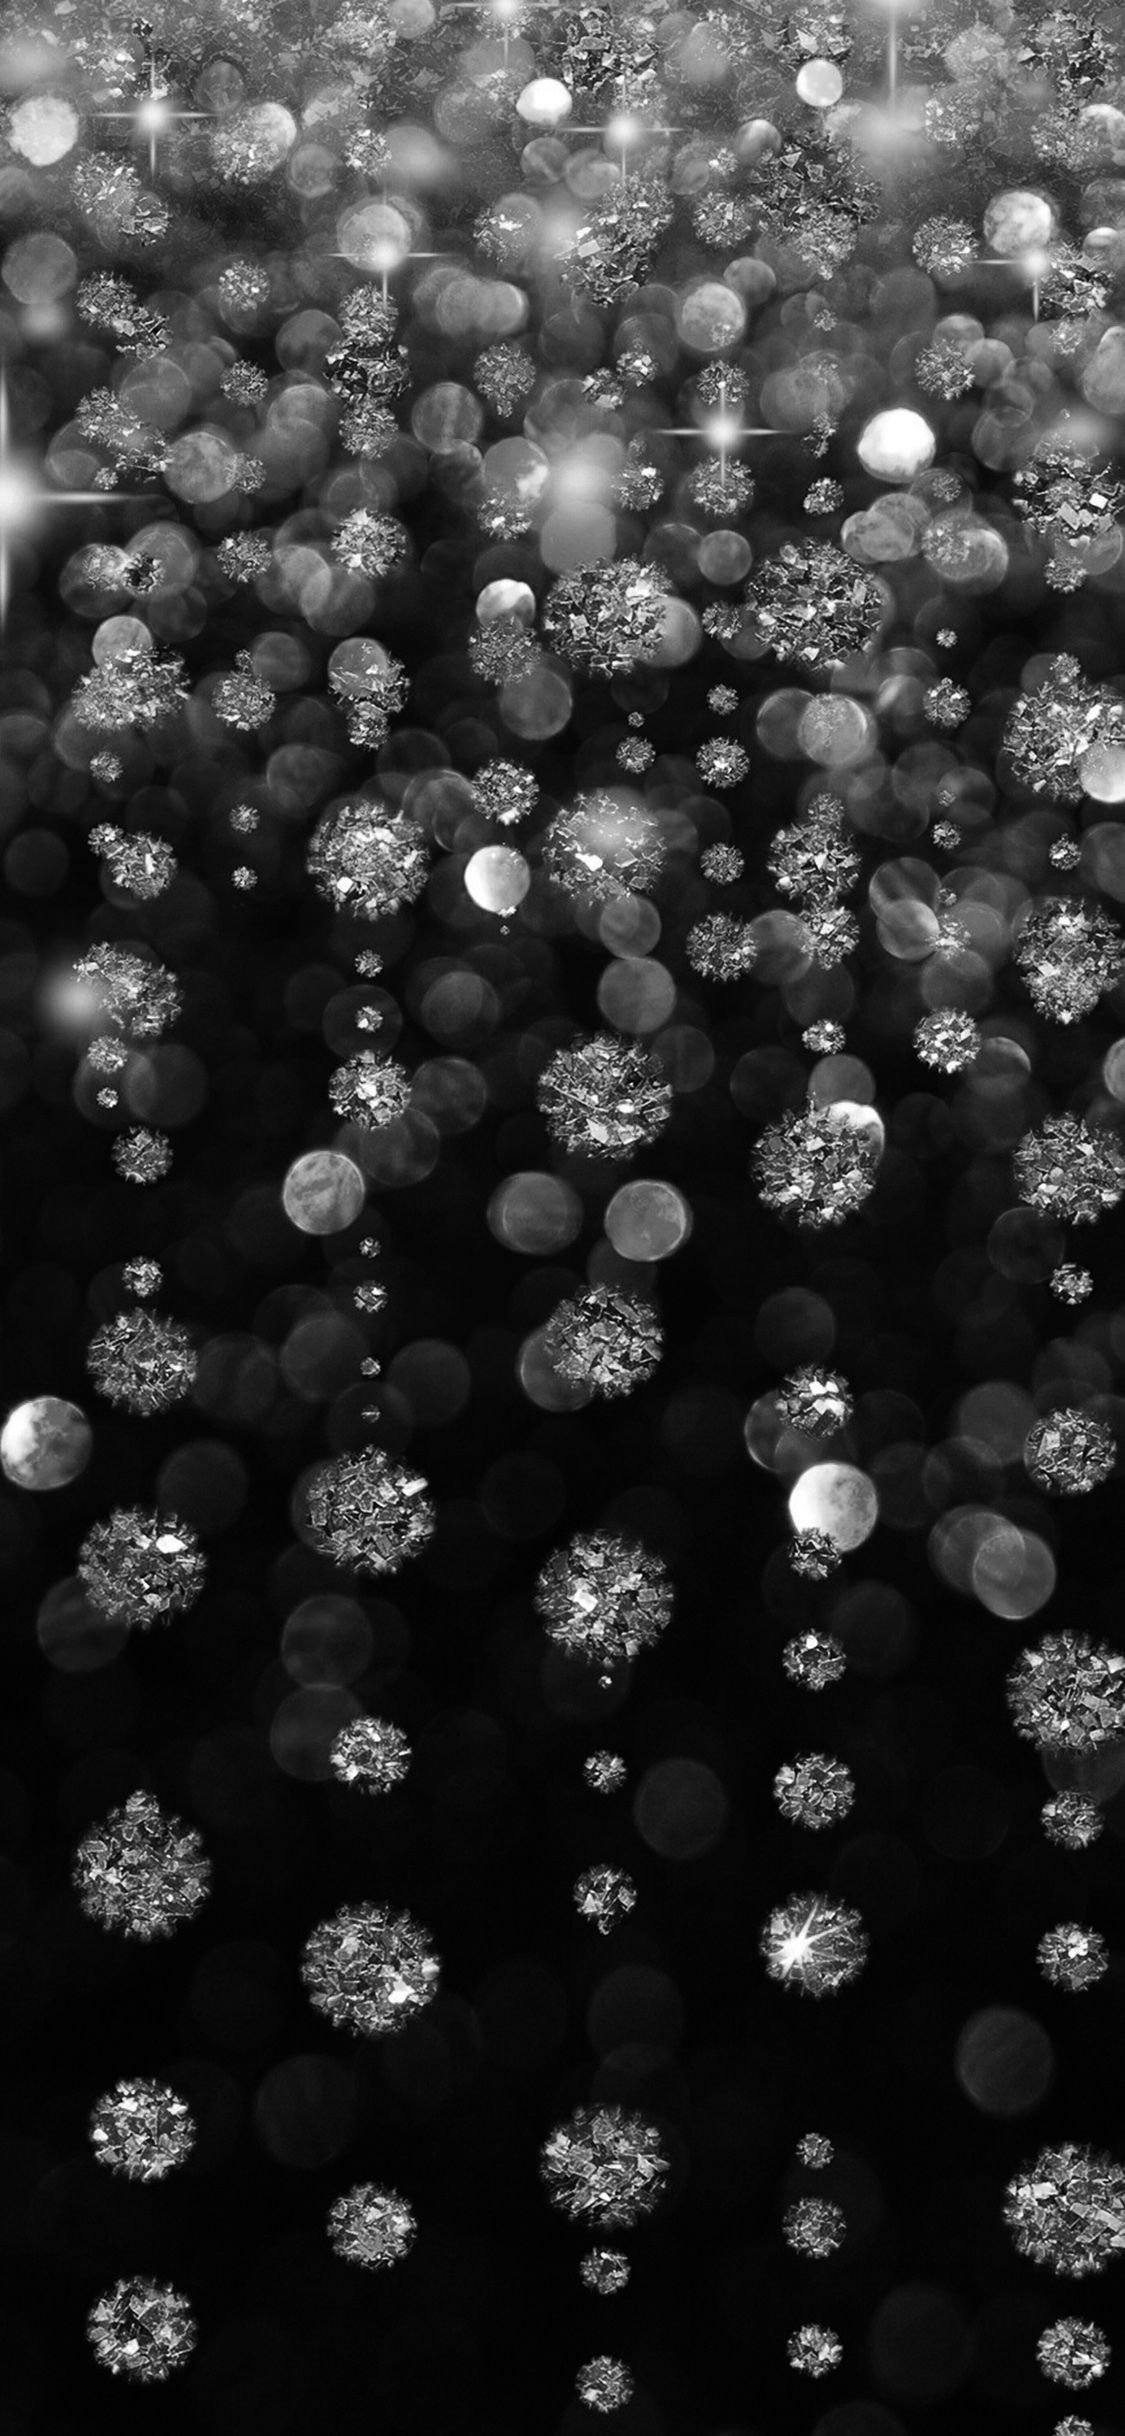 A black and white photo of snowflakes falling - Diamond